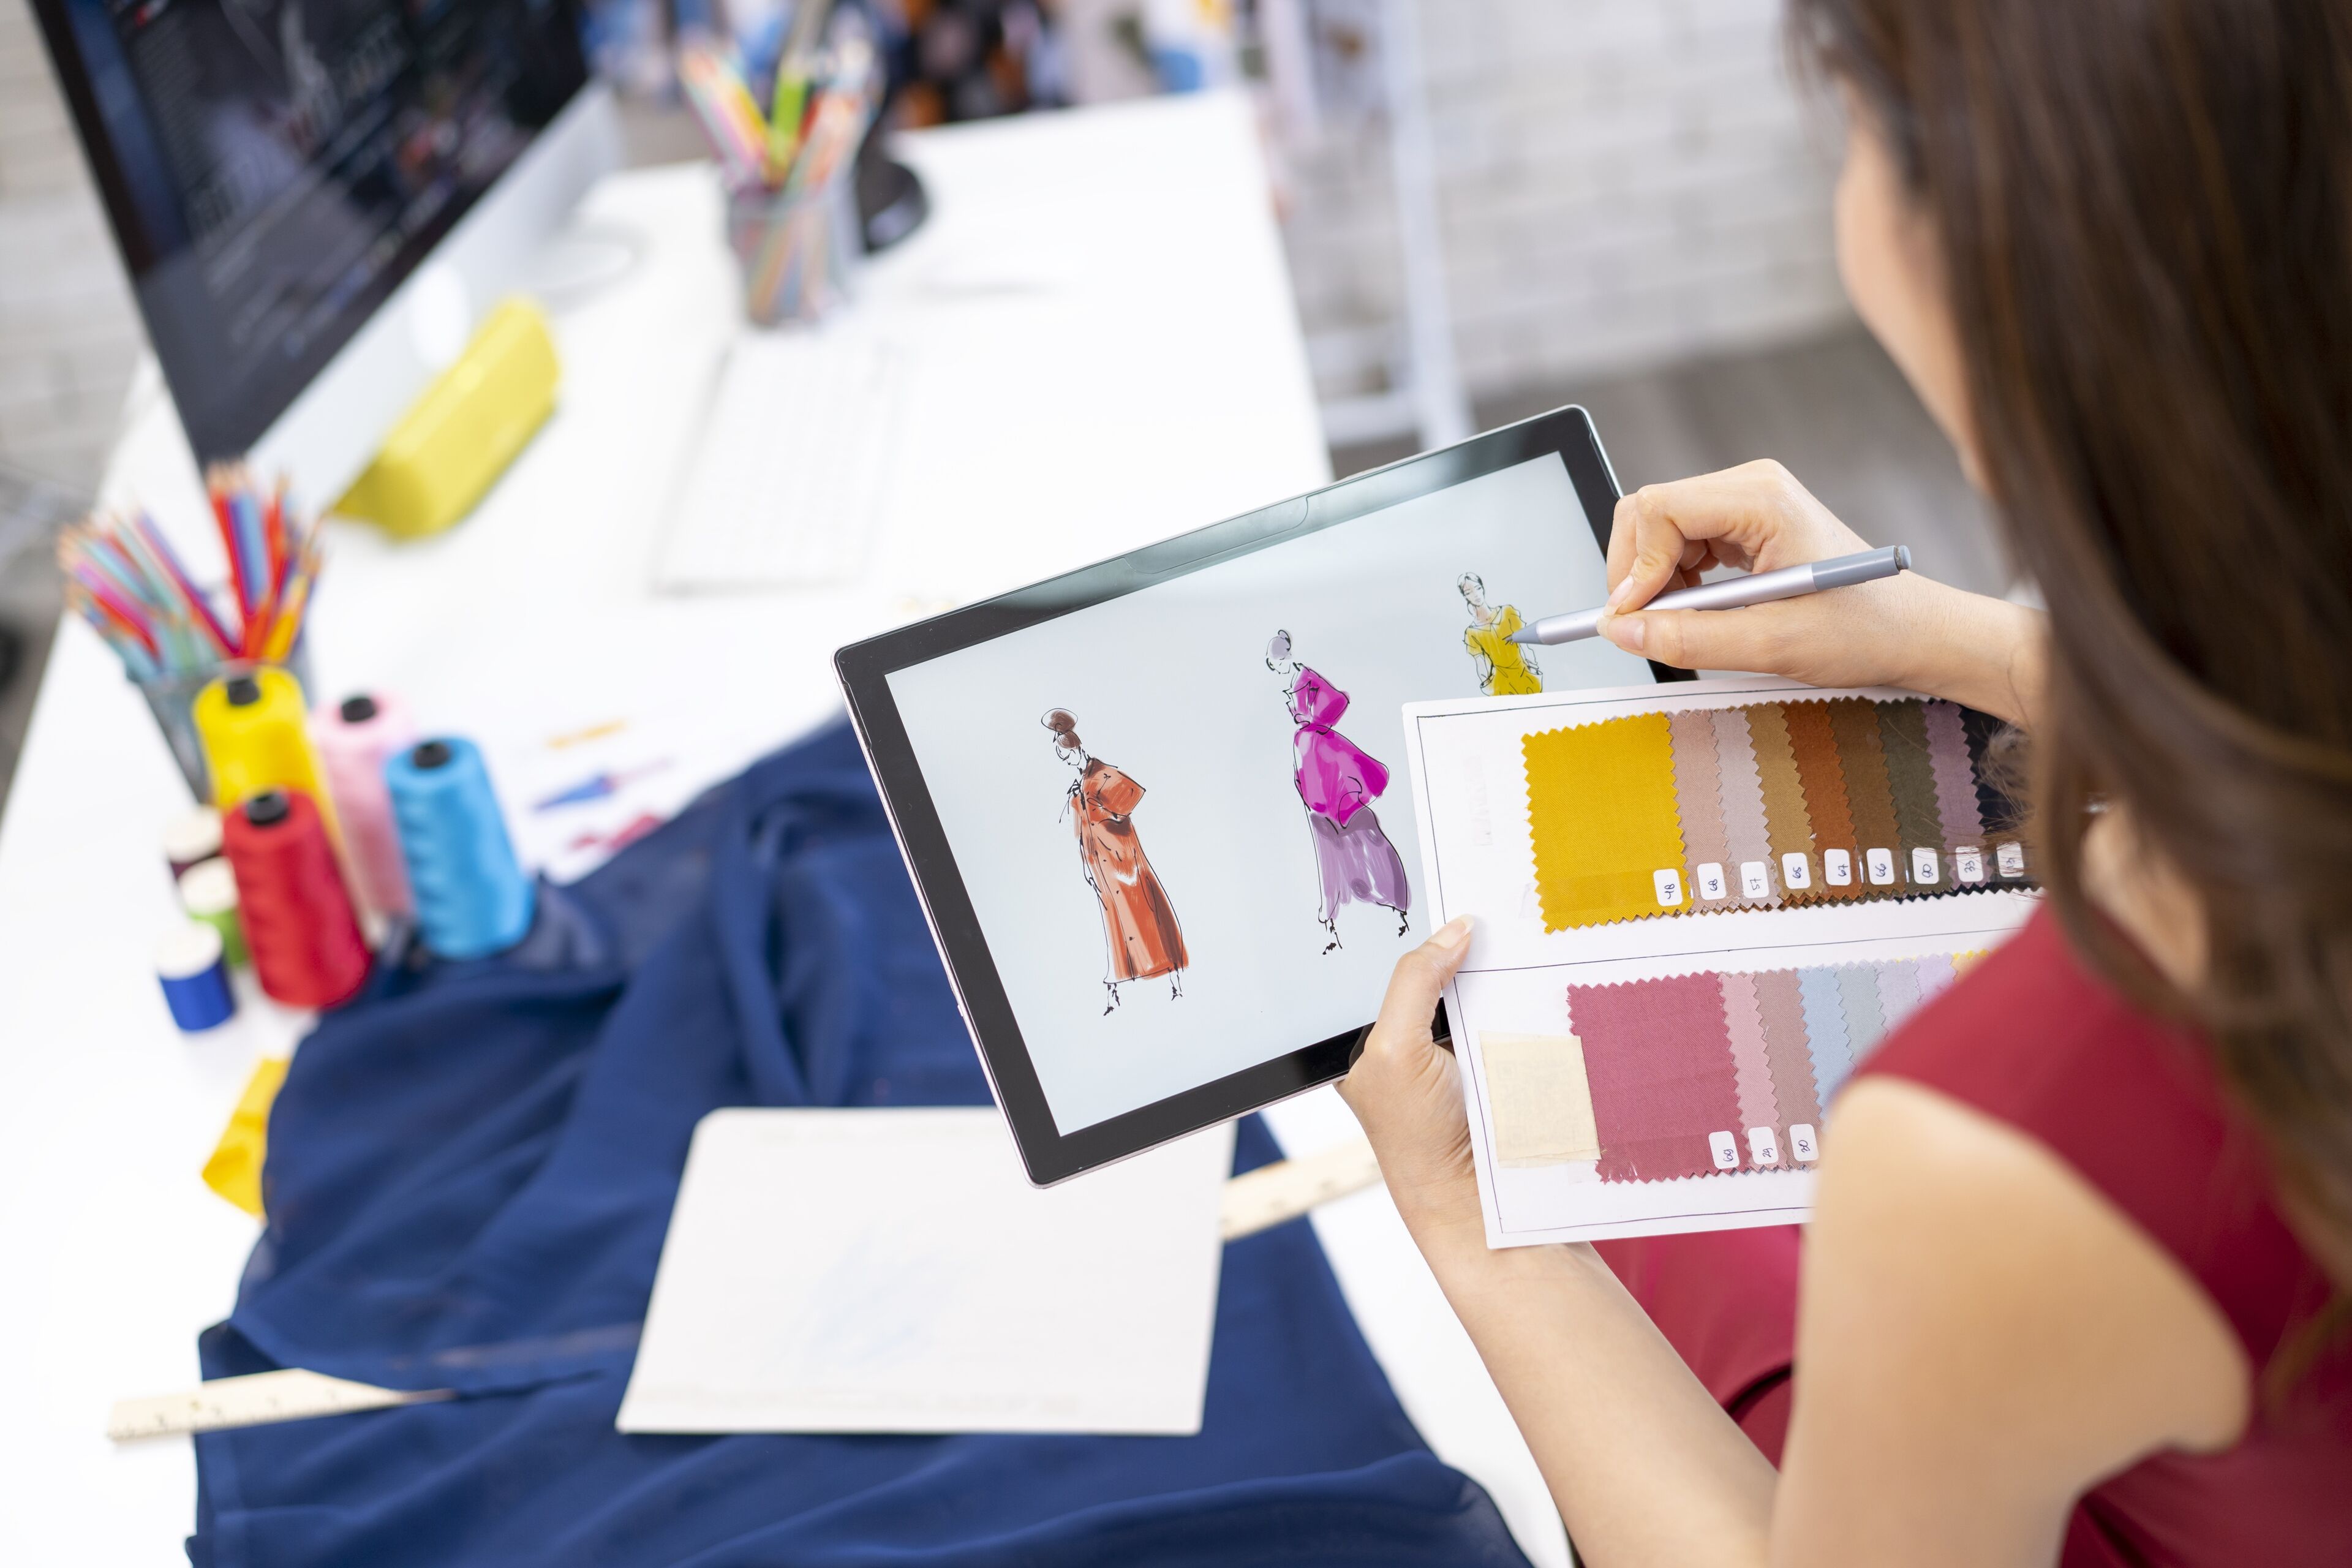 ne créatrice observe des croquis numériques de vêtements sur une tablette, en se référant à une palette d'échantillons de tissus, dans un espace de création.